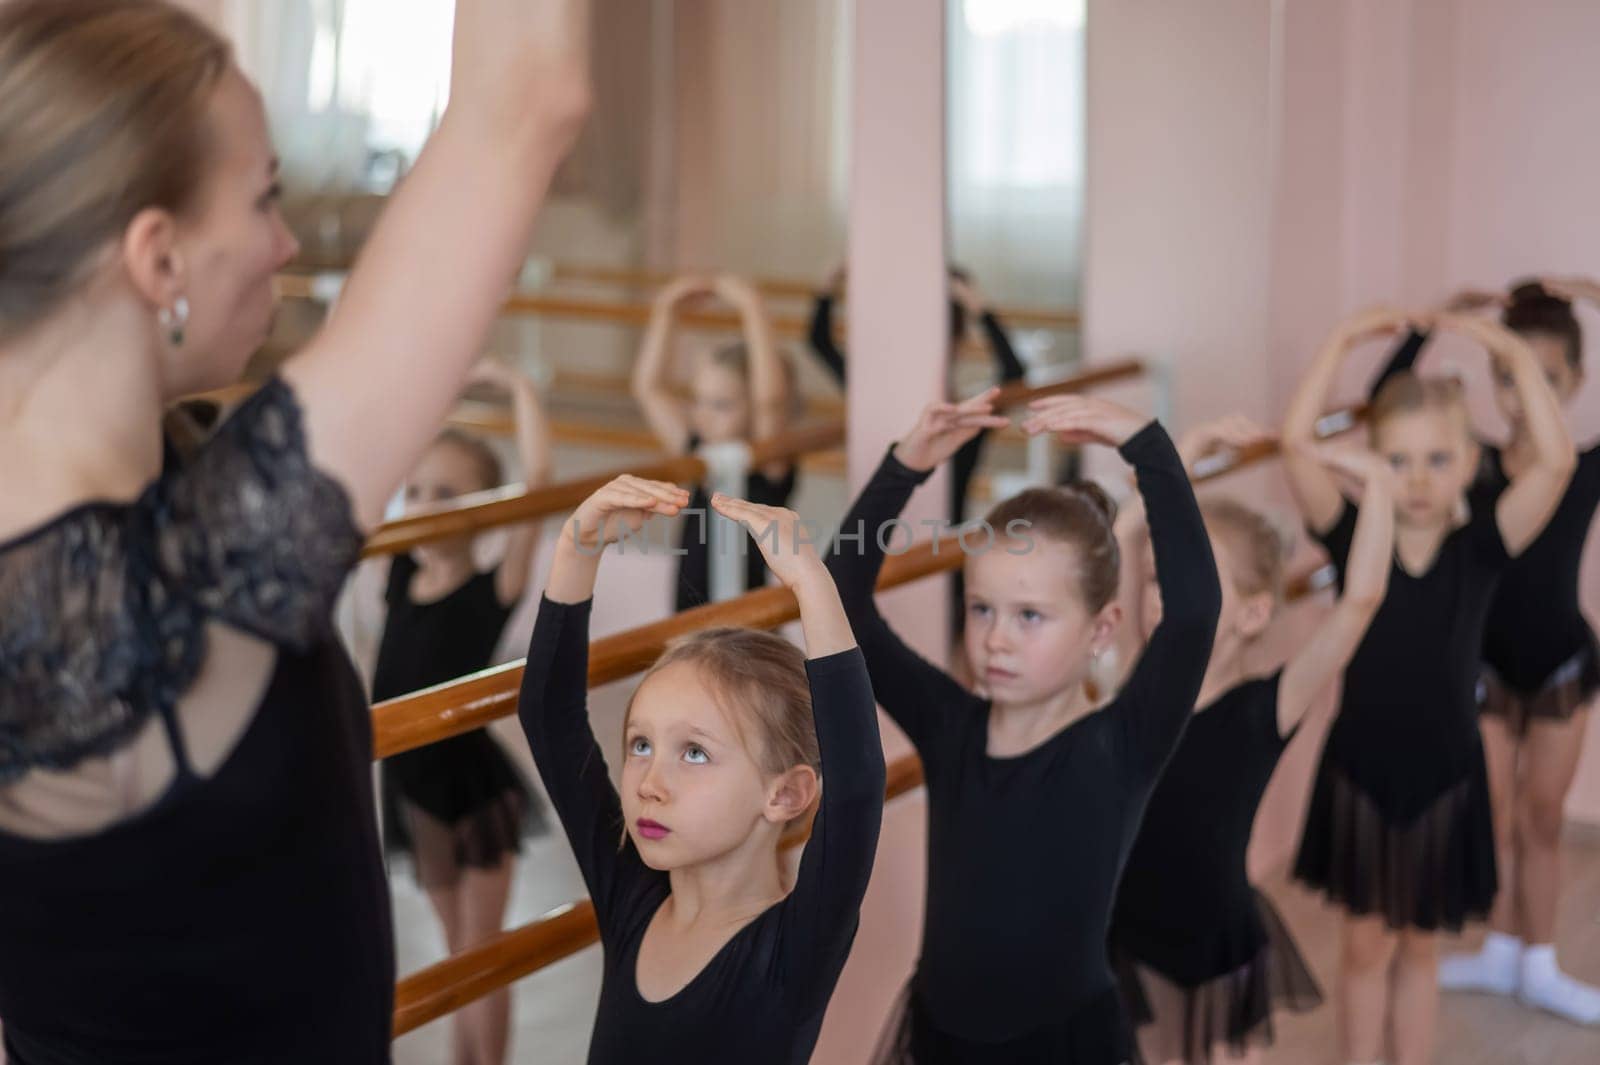 Children's ballet school. Caucasian woman teaching ballet to little girls